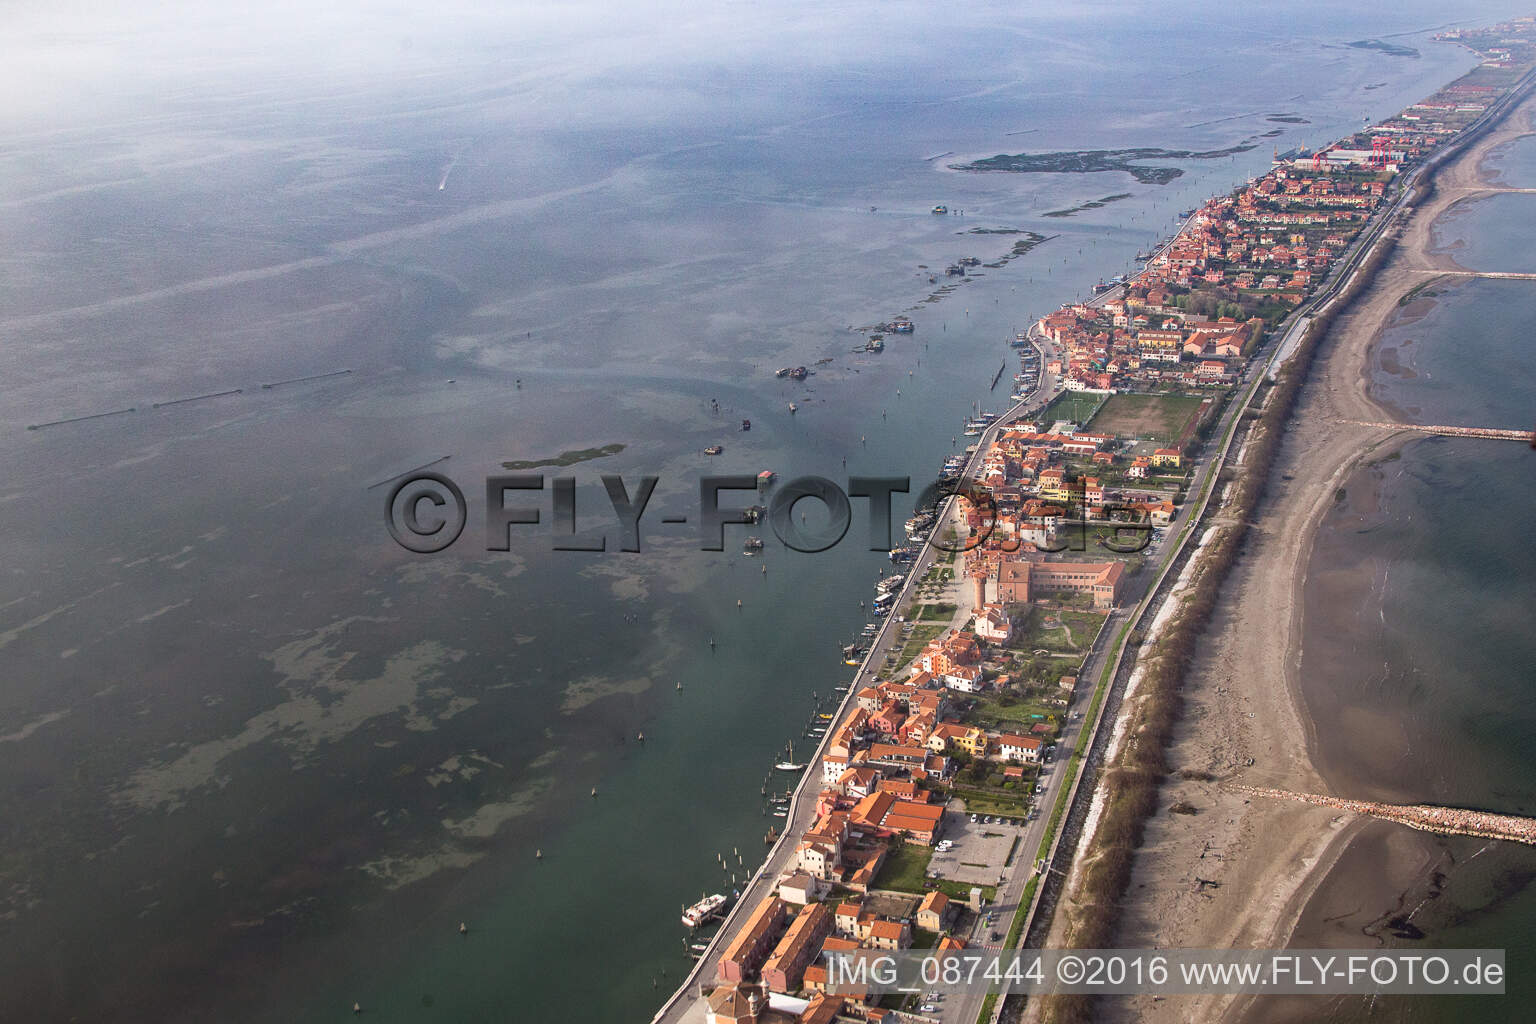 Siedlungsgebiet im Ortsteil Pellestrina in Venedig in Venetien, Italien aus der Drohnenperspektive